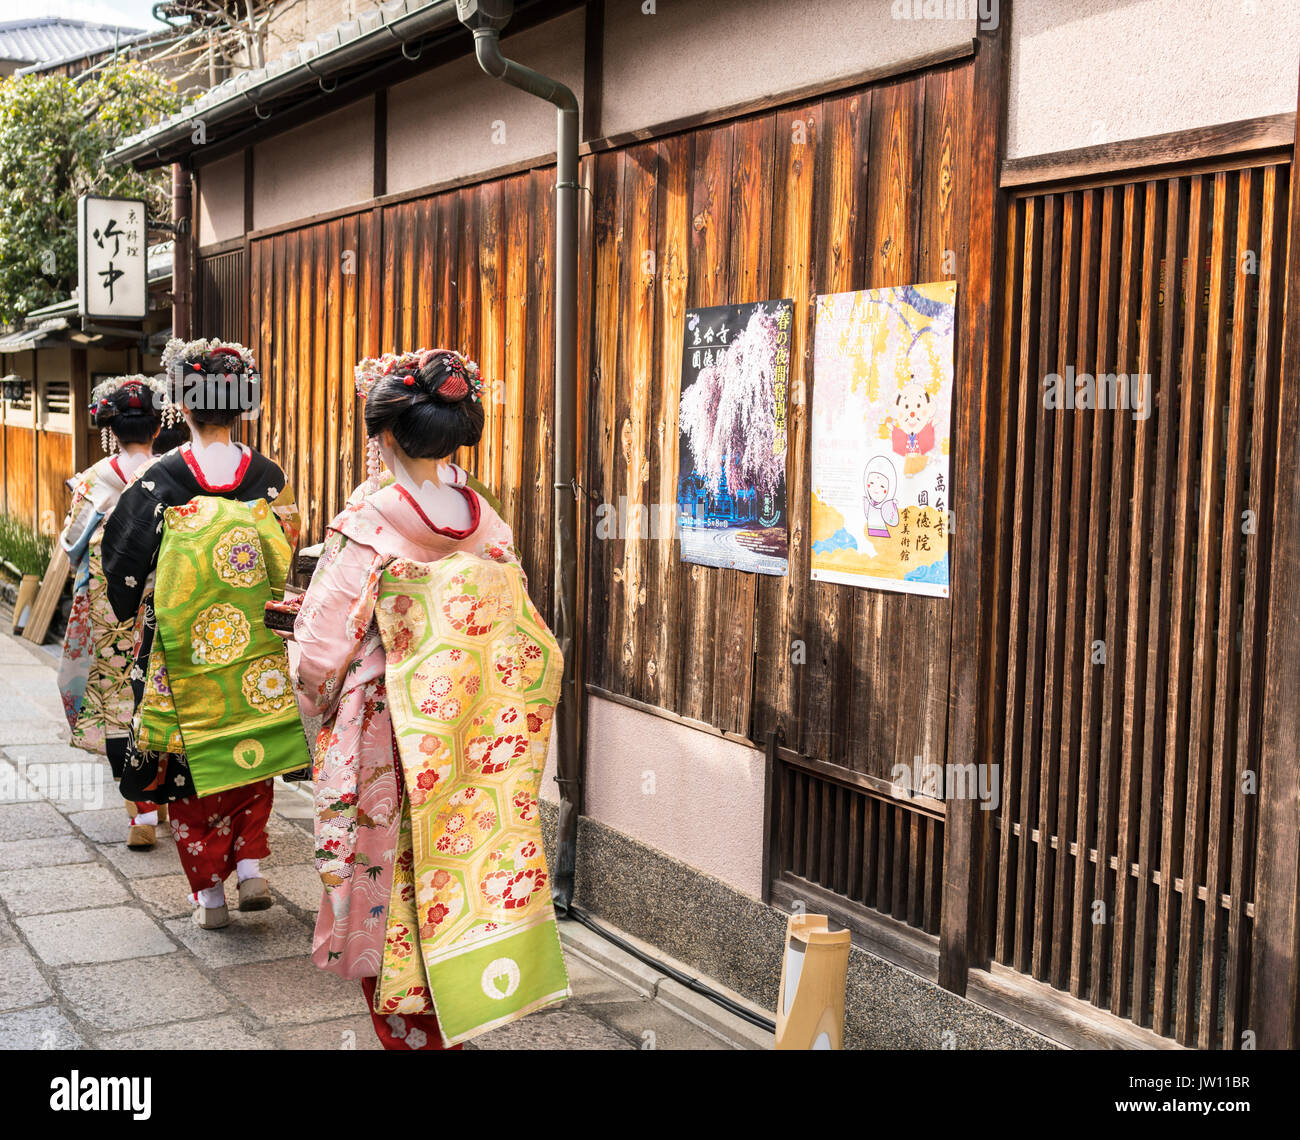 Groupe de trois geishas, marche dans une rue de Kyoto traditionnel au Japon Banque D'Images